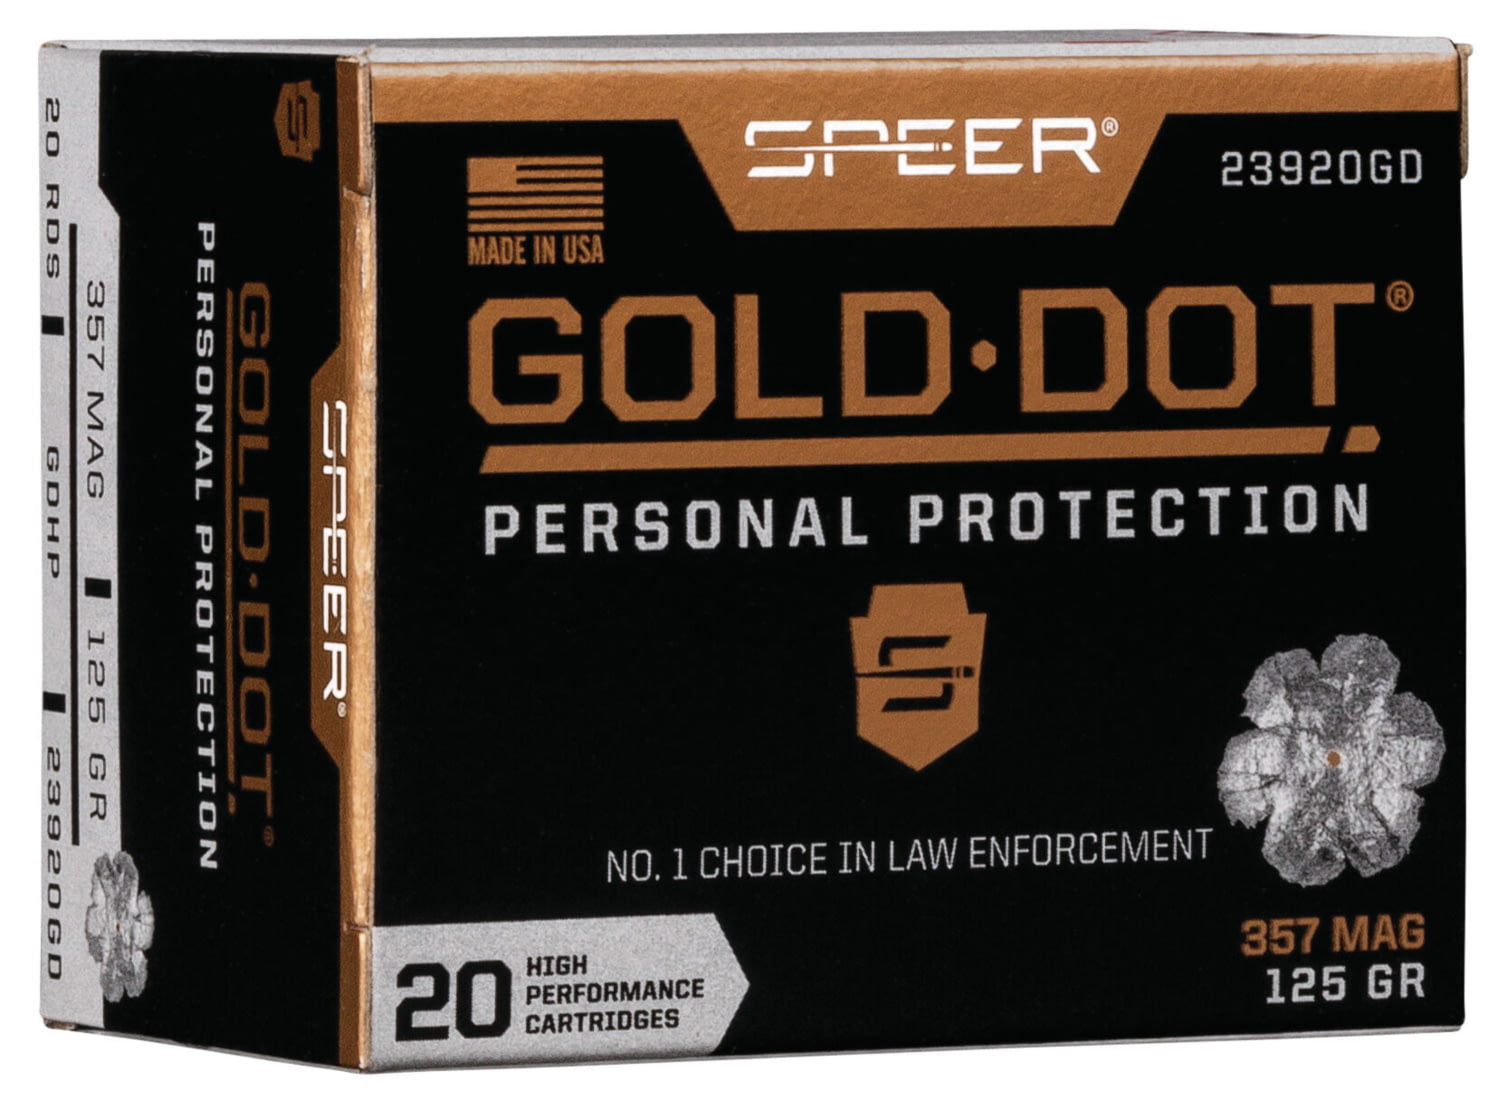 Speer Gold Dot .357 Magnum 125 grain Gold Dot Hollow Point Centerfire Pistol Ammunition